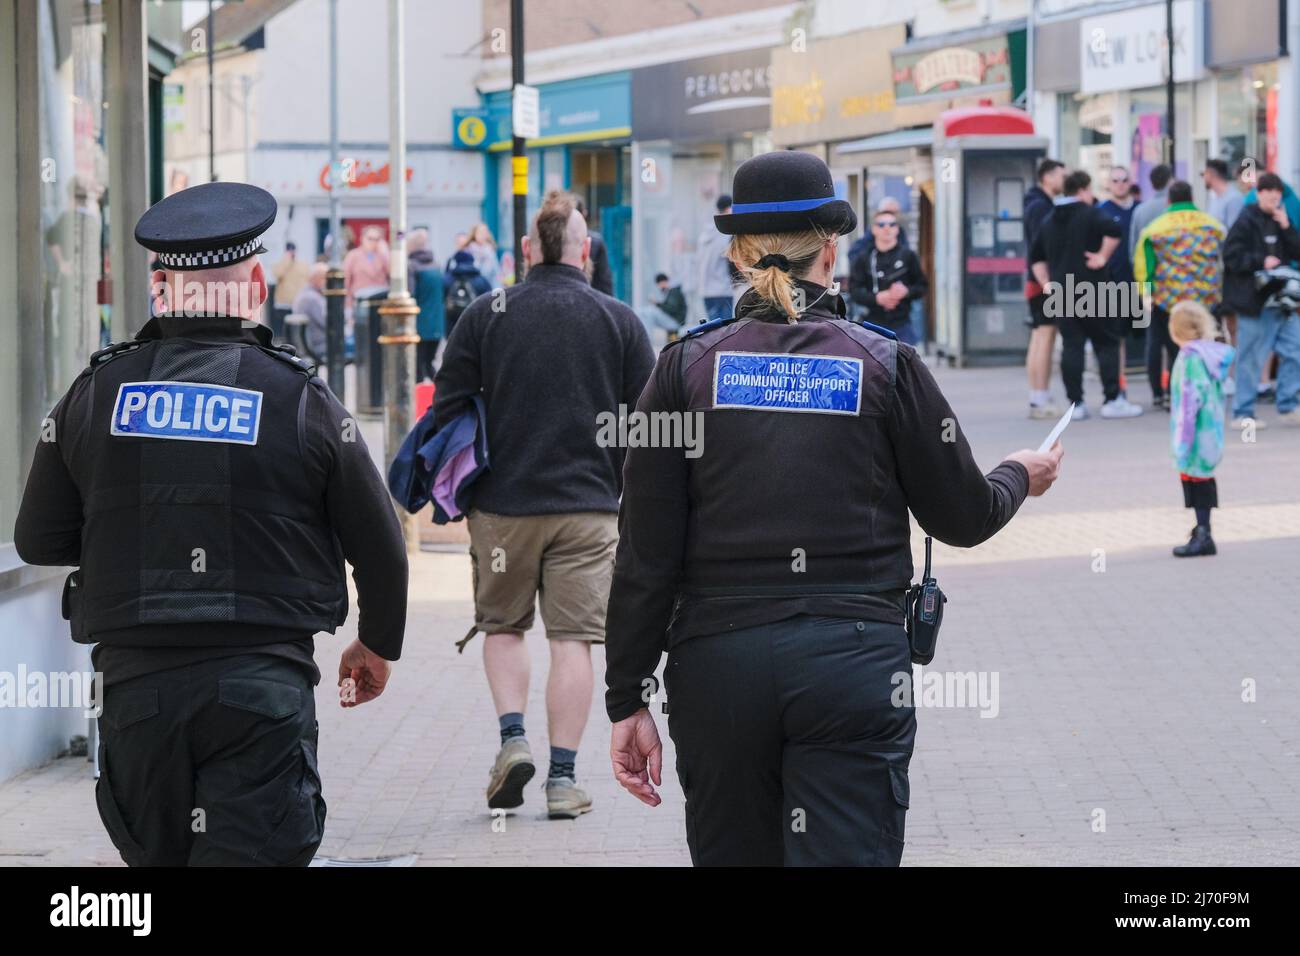 Un agent de police et un agent de soutien communautaire de la police qui traversent le centre-ville de Newquay à Cornwall, au Royaume-Uni. Banque D'Images